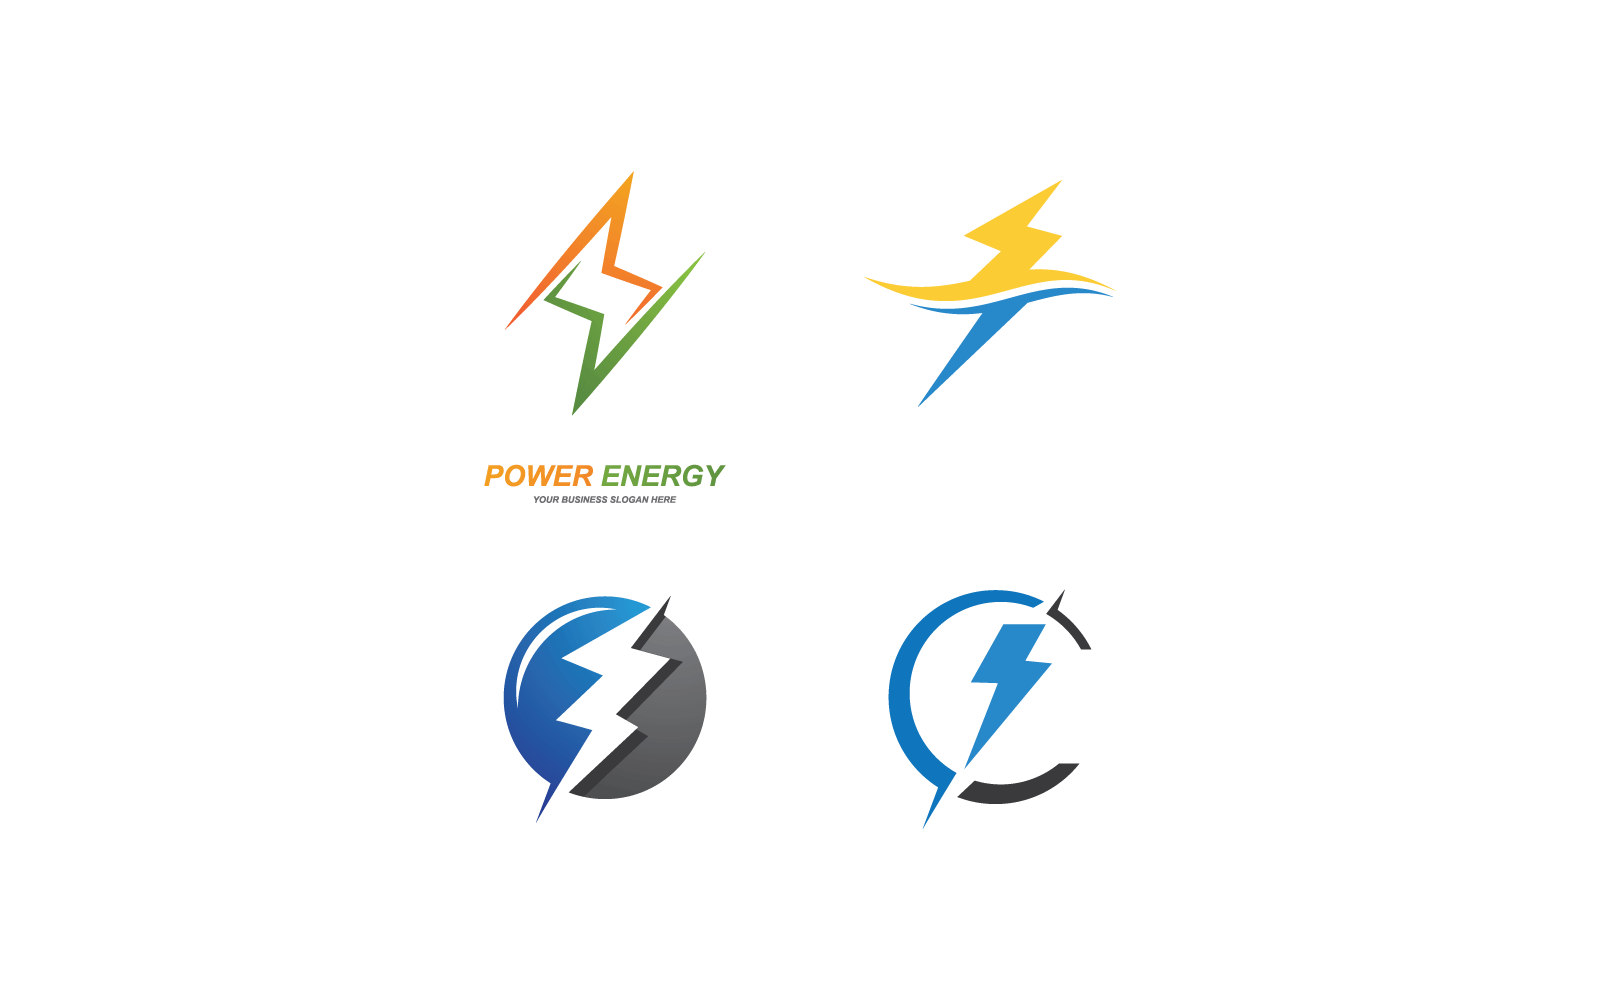 Power lightning power energy illustration logo vector design Logo Template